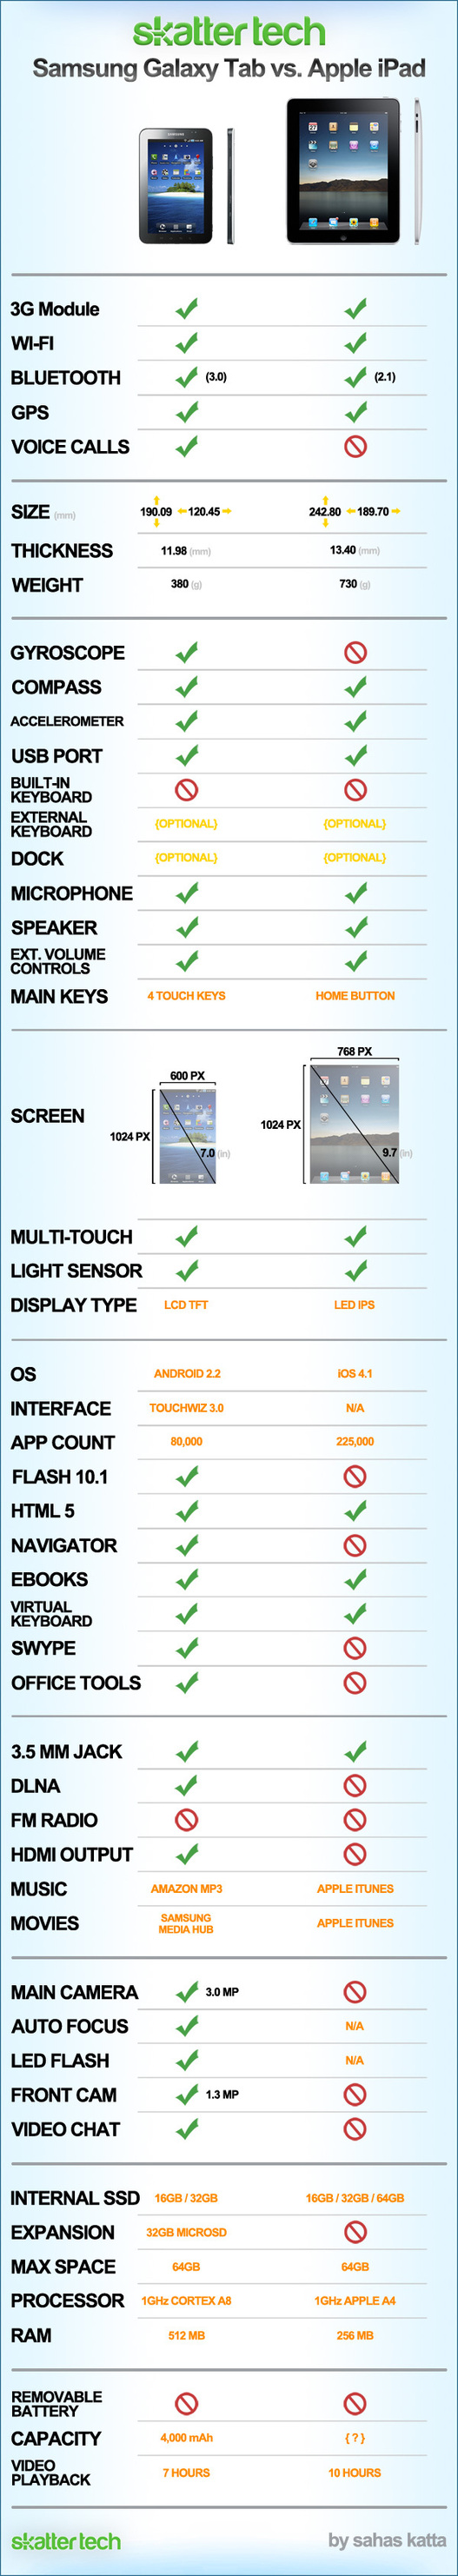 Samsung Galaxy Tab Vs iPad en 1 image